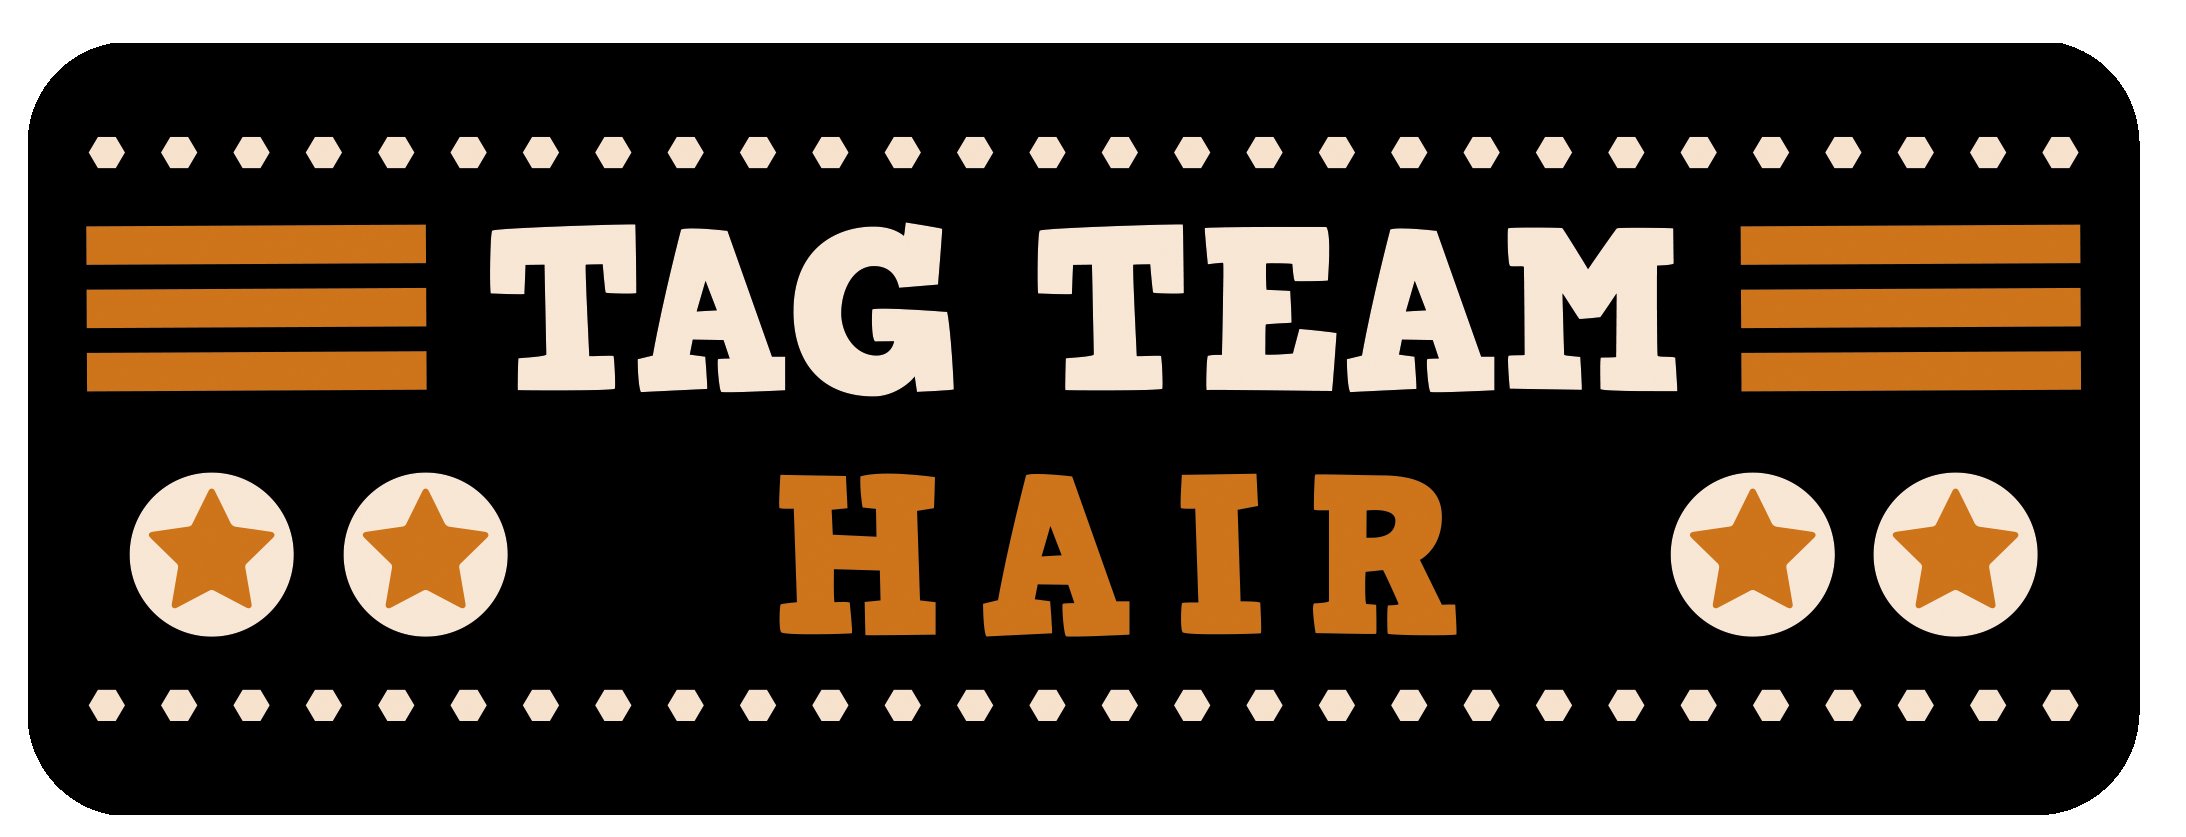 Tag Team Hair